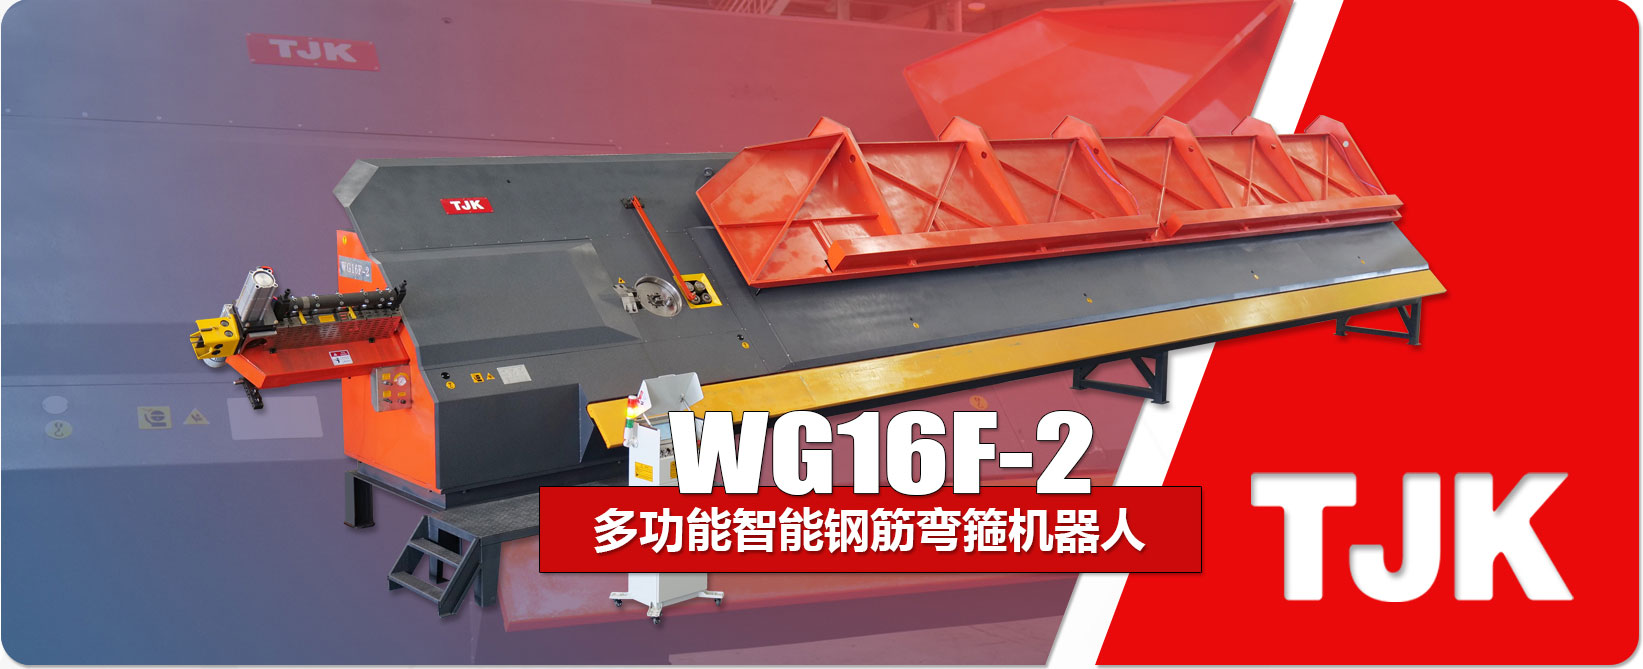 WG16F-2产品特点_03.jpg